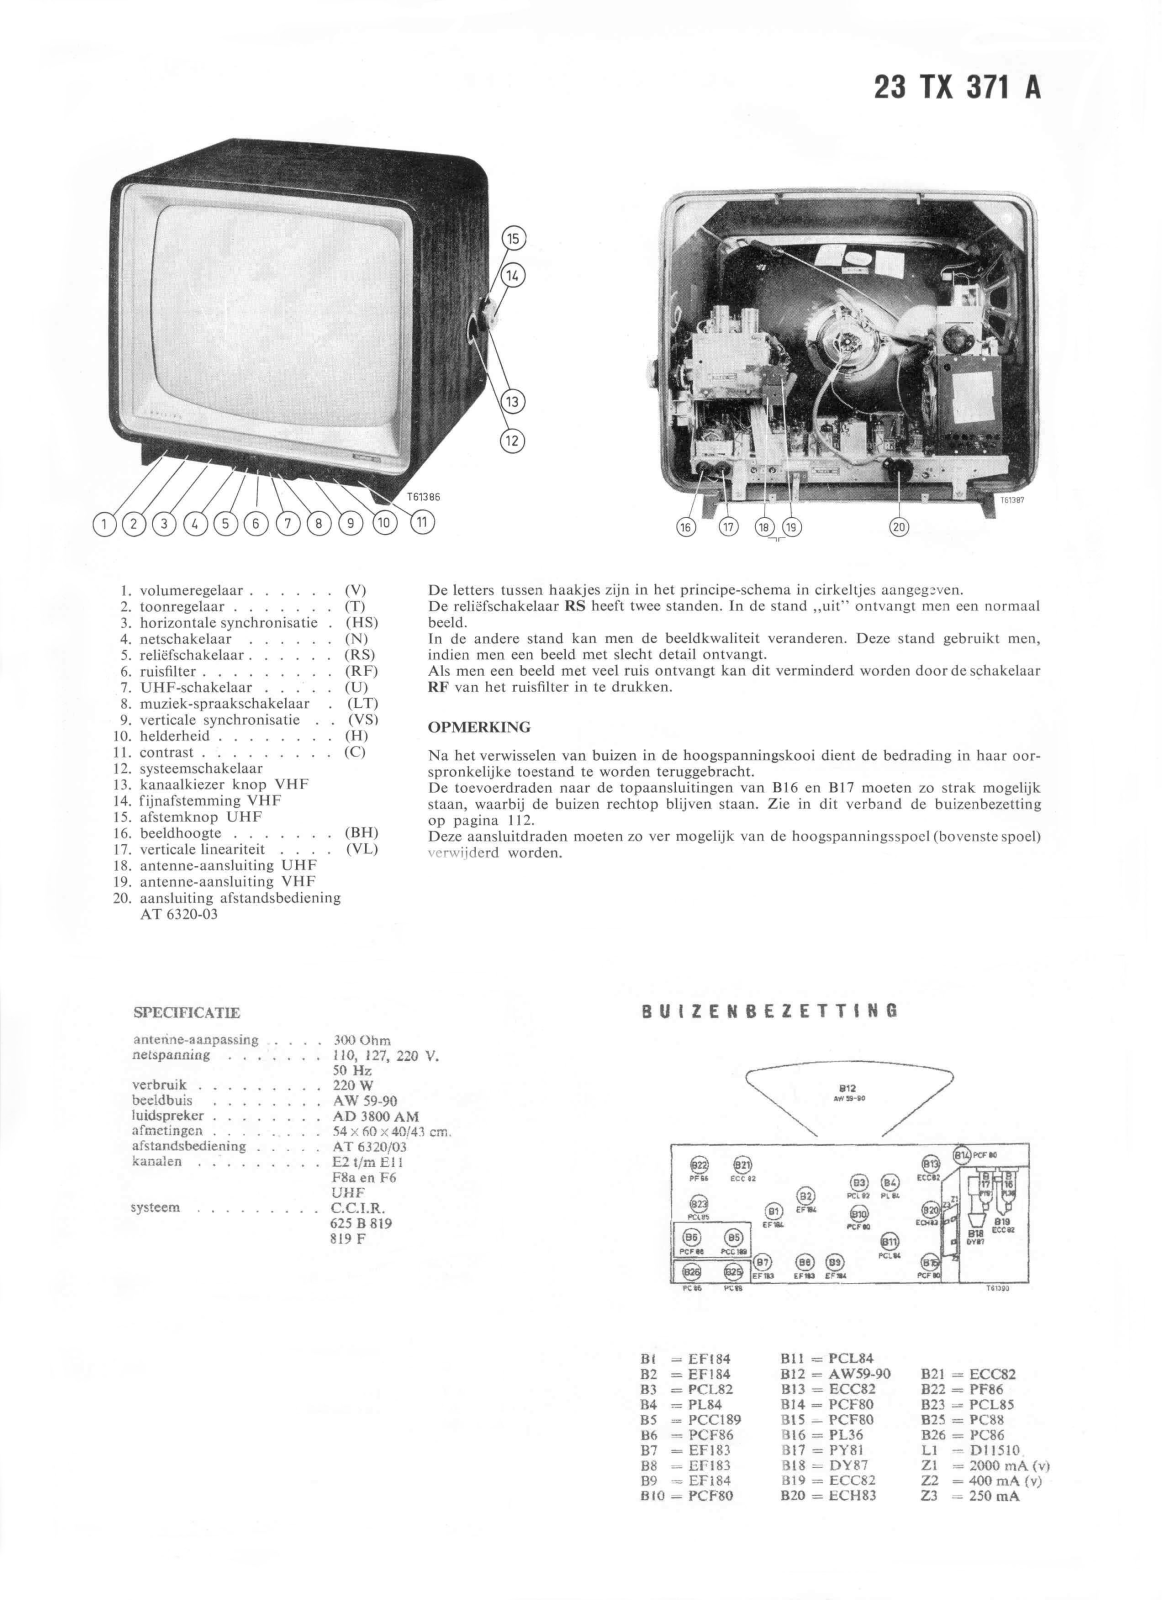 Philips 23TX371A Schematic